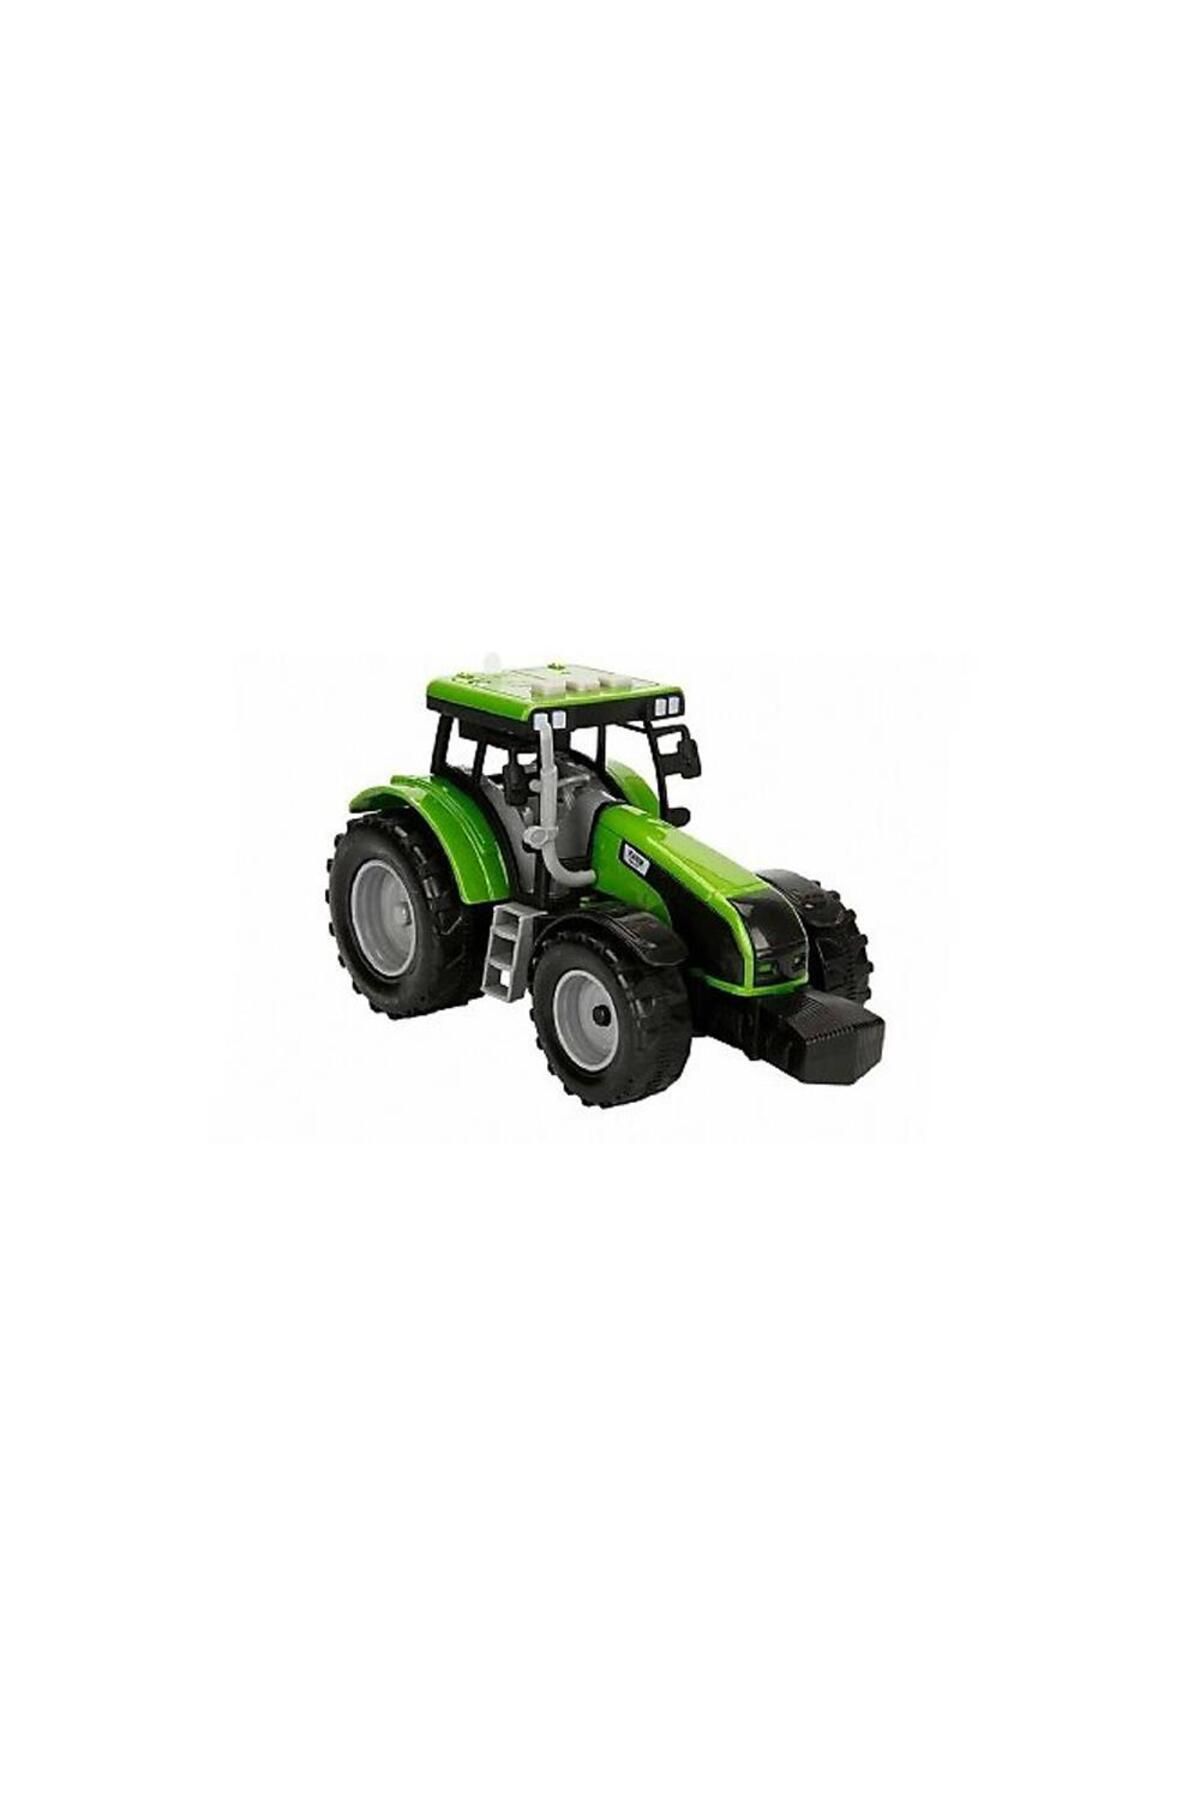 AYATOYS Aya Toys Pilli Oyuncak Traktör 40036,Pilli Işıklı Oyuncak Araç